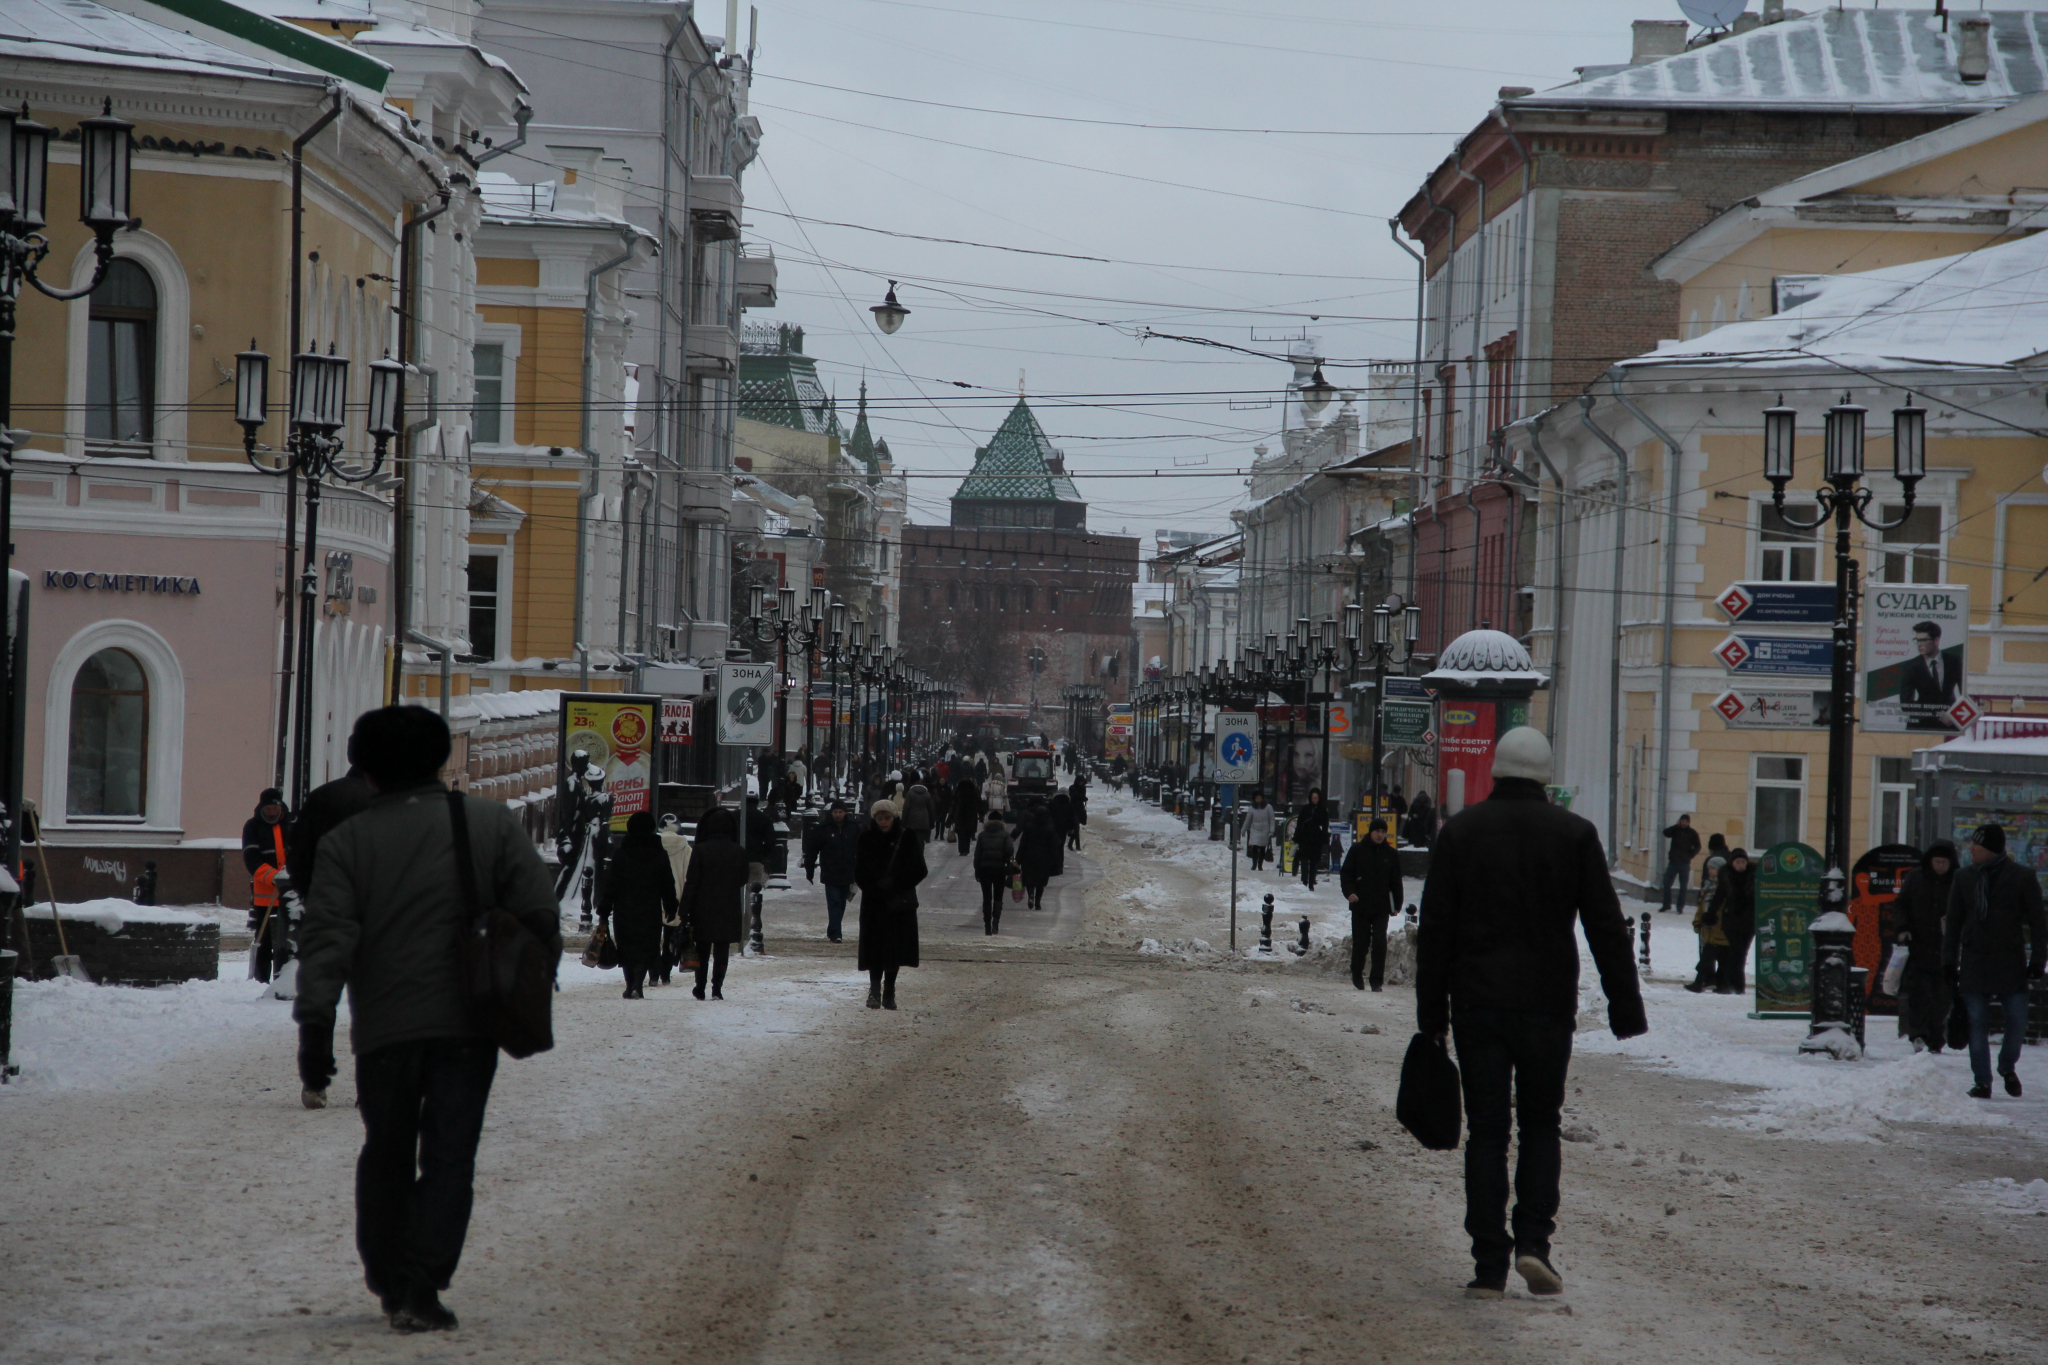 Нижний Новгороду может стать «Городом трудовой доблести»